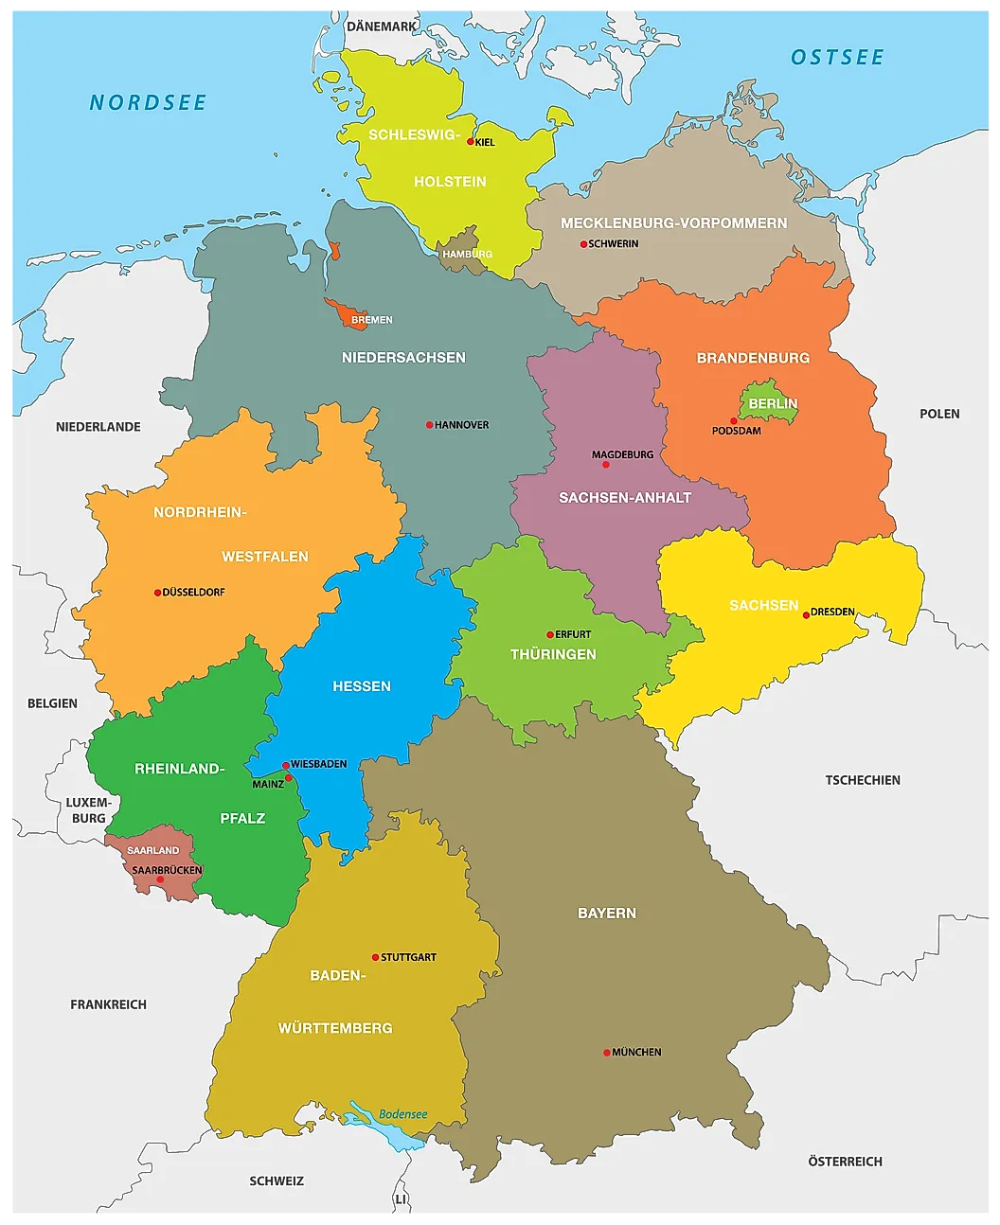 خريطة ألمانيا باللغة العربية مع المقاطعات والحدود والمدن | عرب ألمانيا